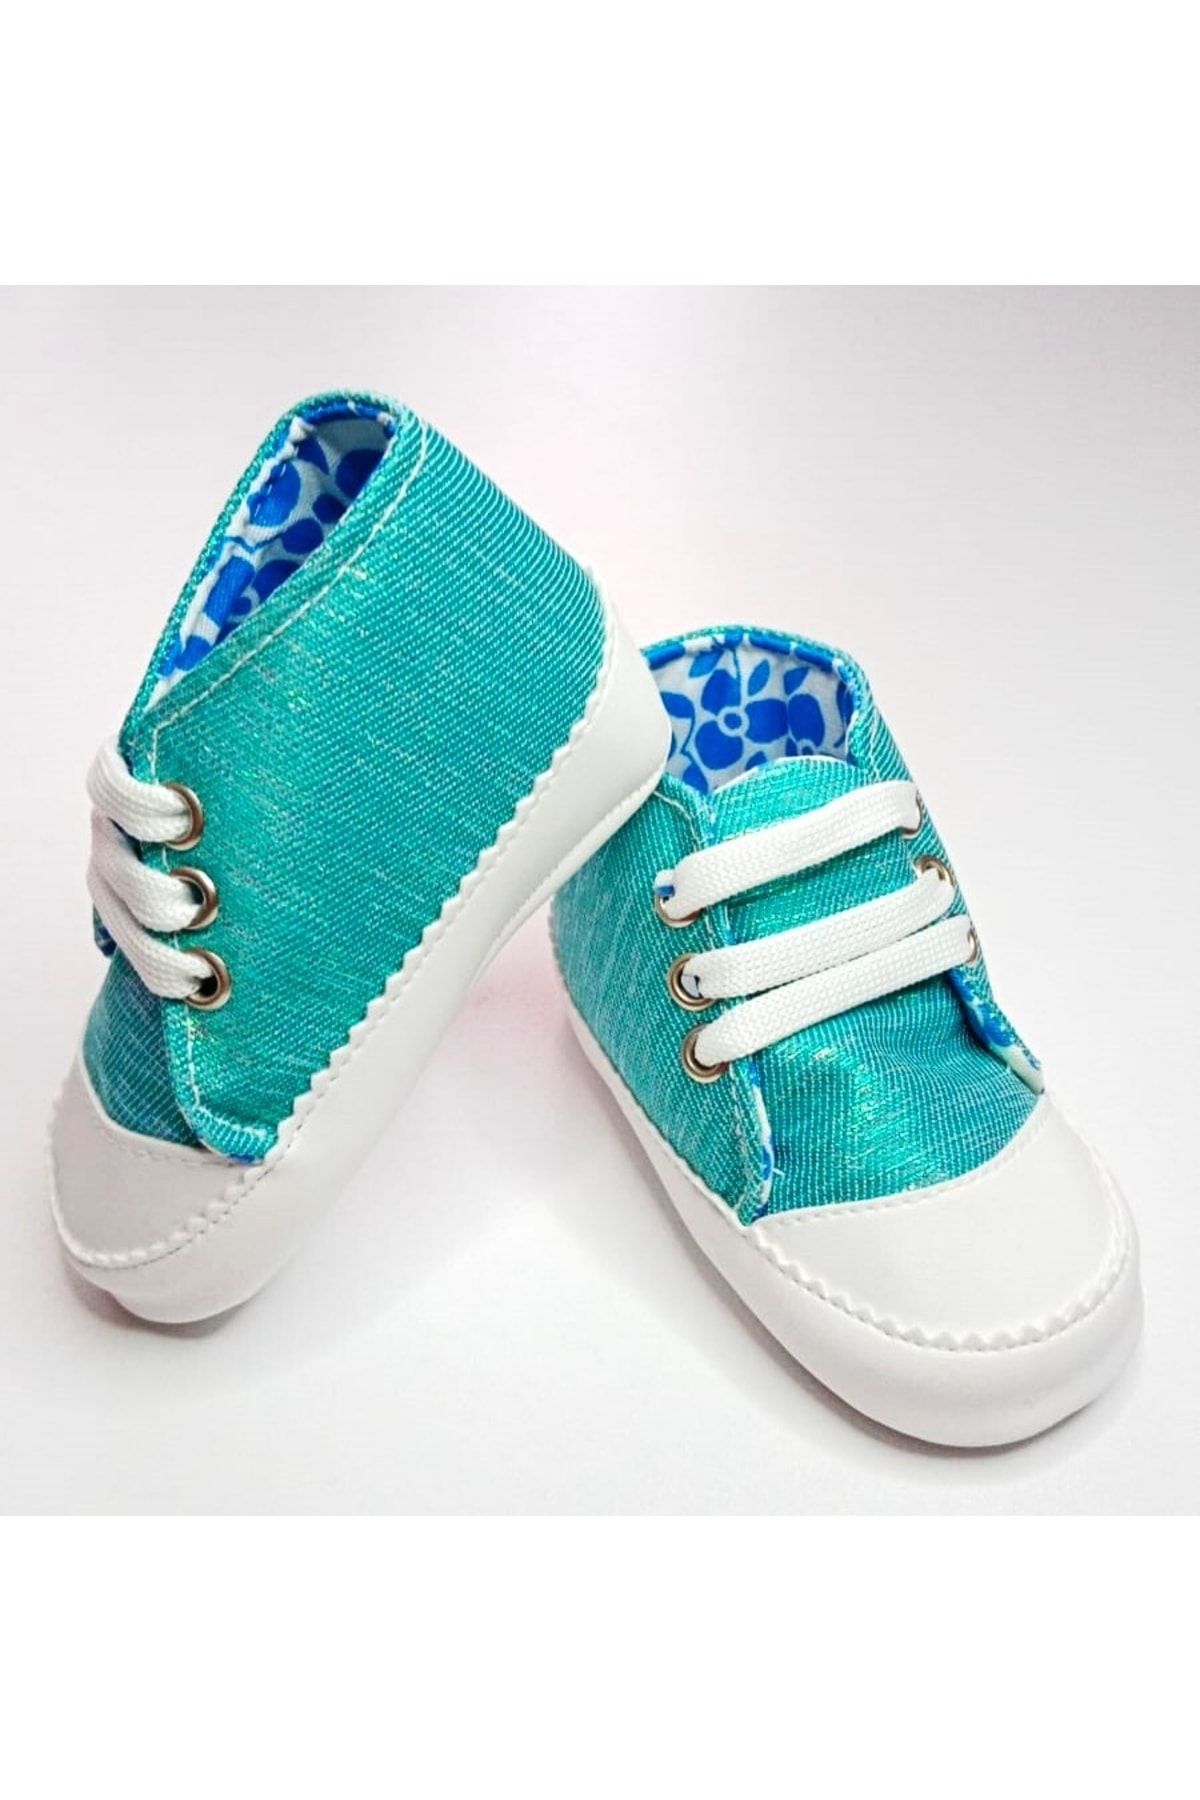 MiniStand Bağcıklı Turkuaz Parıltılı Kız Bebek Ayakkabı